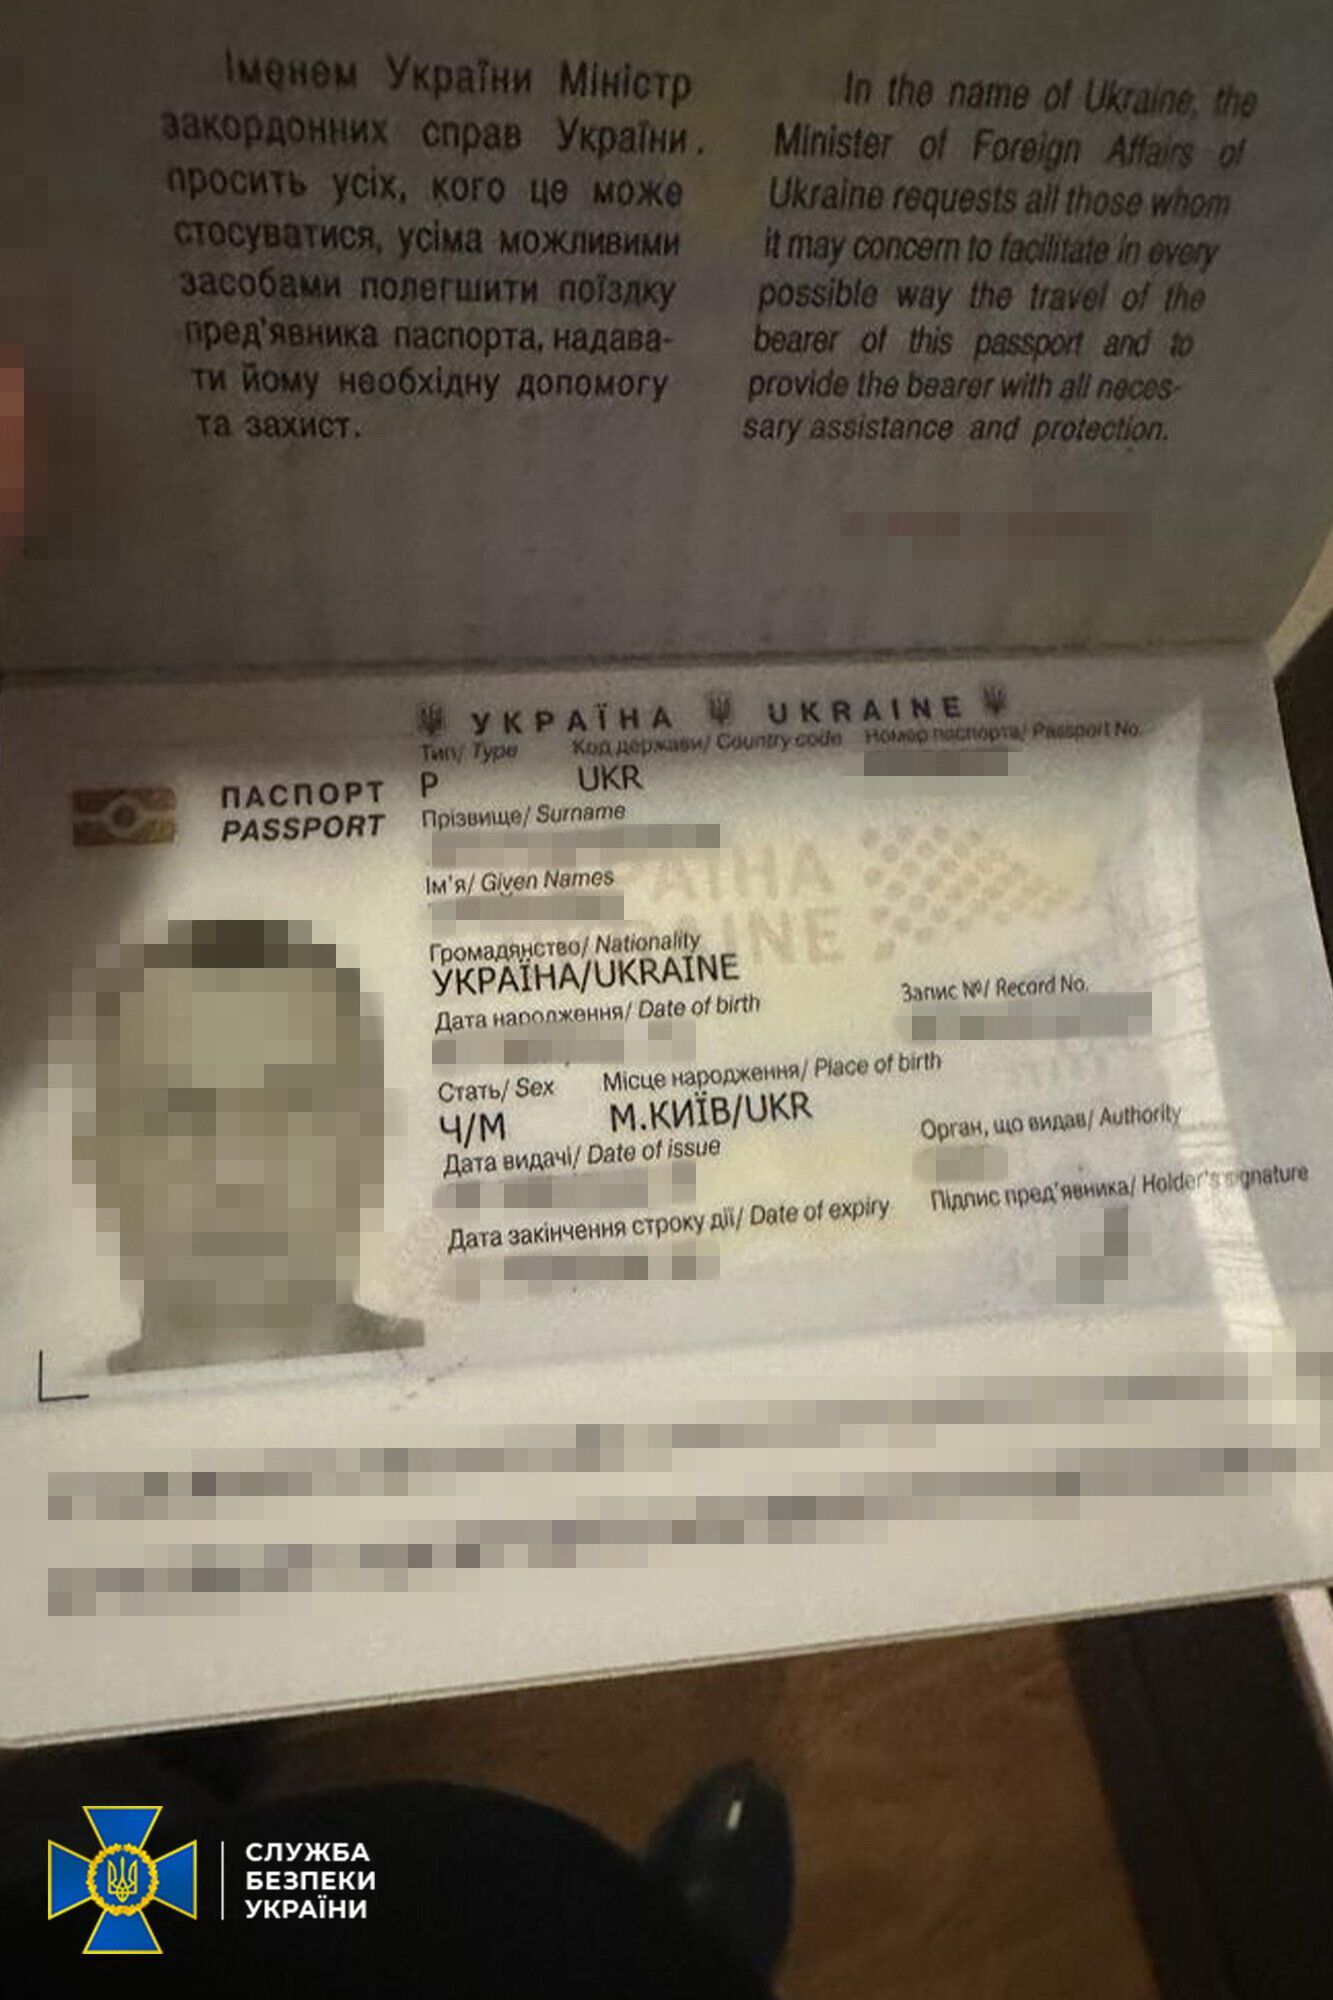 В паспорте визы из Мальдив: у отдыхавшего на островах депутата-слуги Аристова провели обыски (фото и видео)